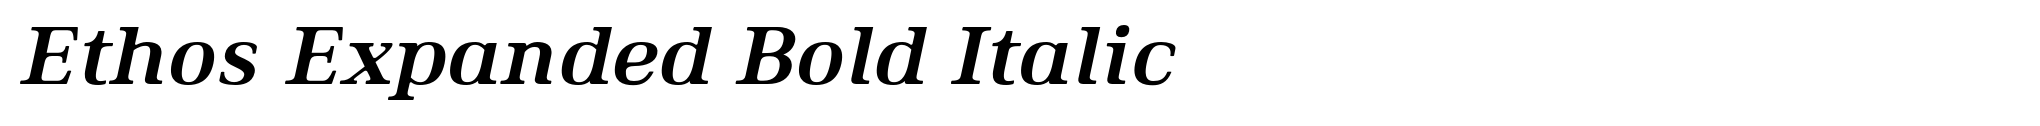 Ethos Expanded Bold Italic image